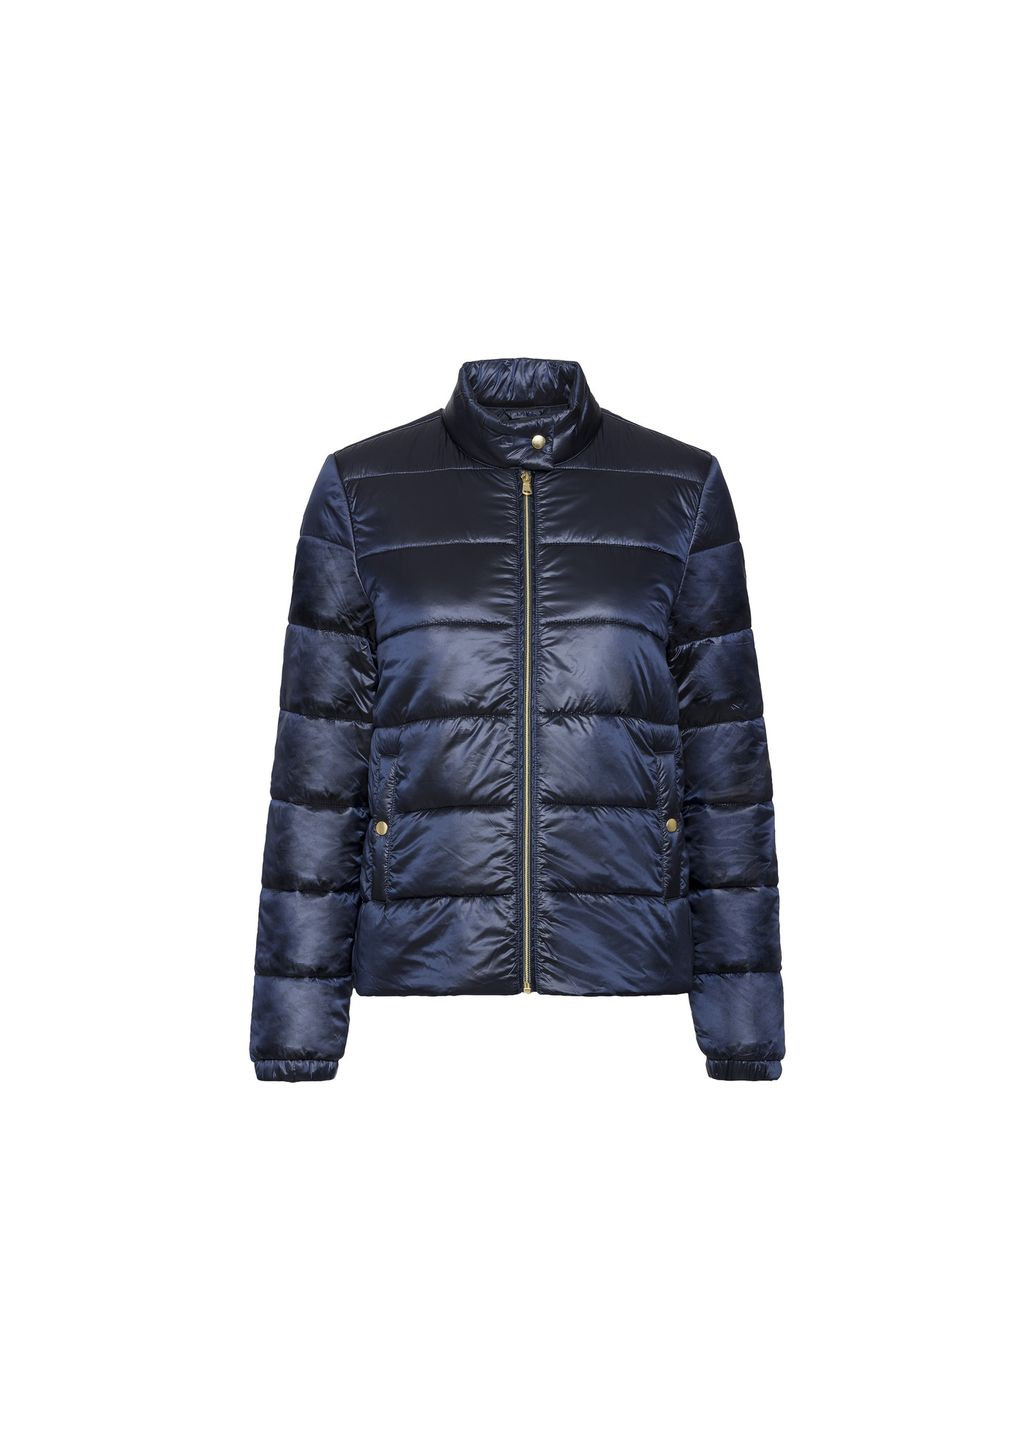 Темно-синяя демисезонная куртка демисезонная водоотталкивающая и ветрозащитная для женщины lidl 418847 куртка-пиджак Esmara